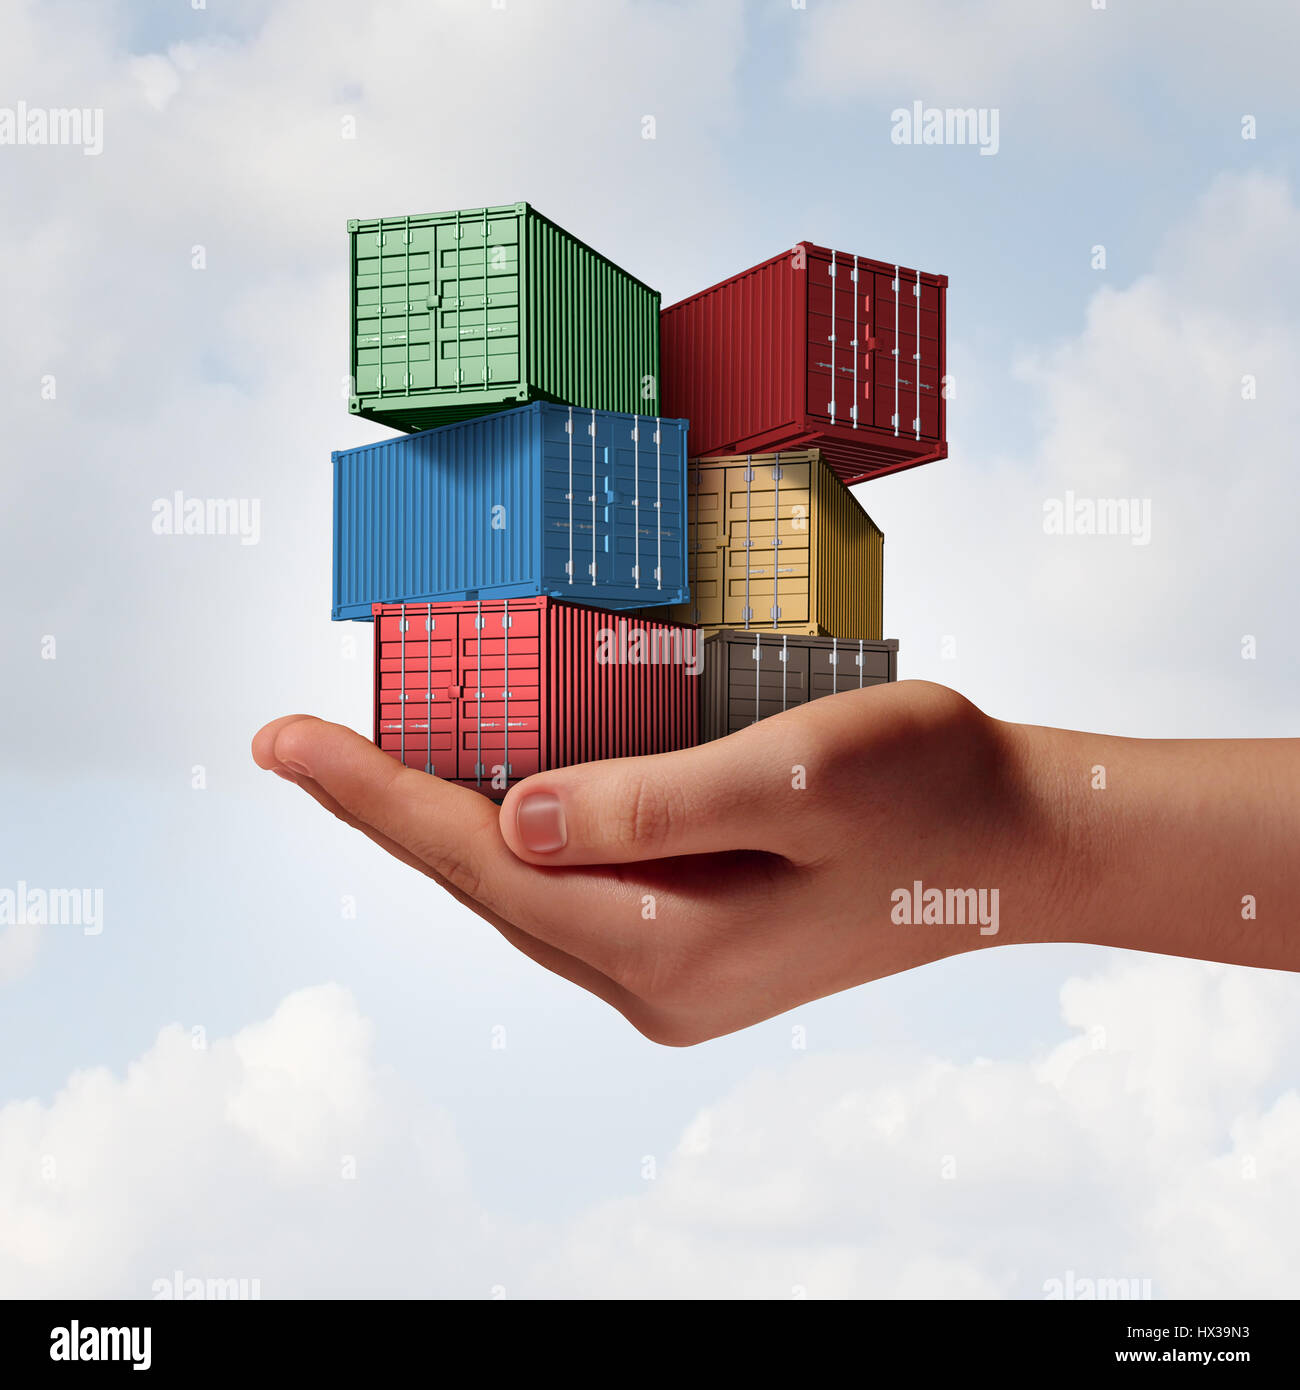 Spedizione Cargo concetto di supporto come una mano che tiene un gruppo di contenitori di merci come i trasporti e la logistica o commercio metafora. Foto Stock